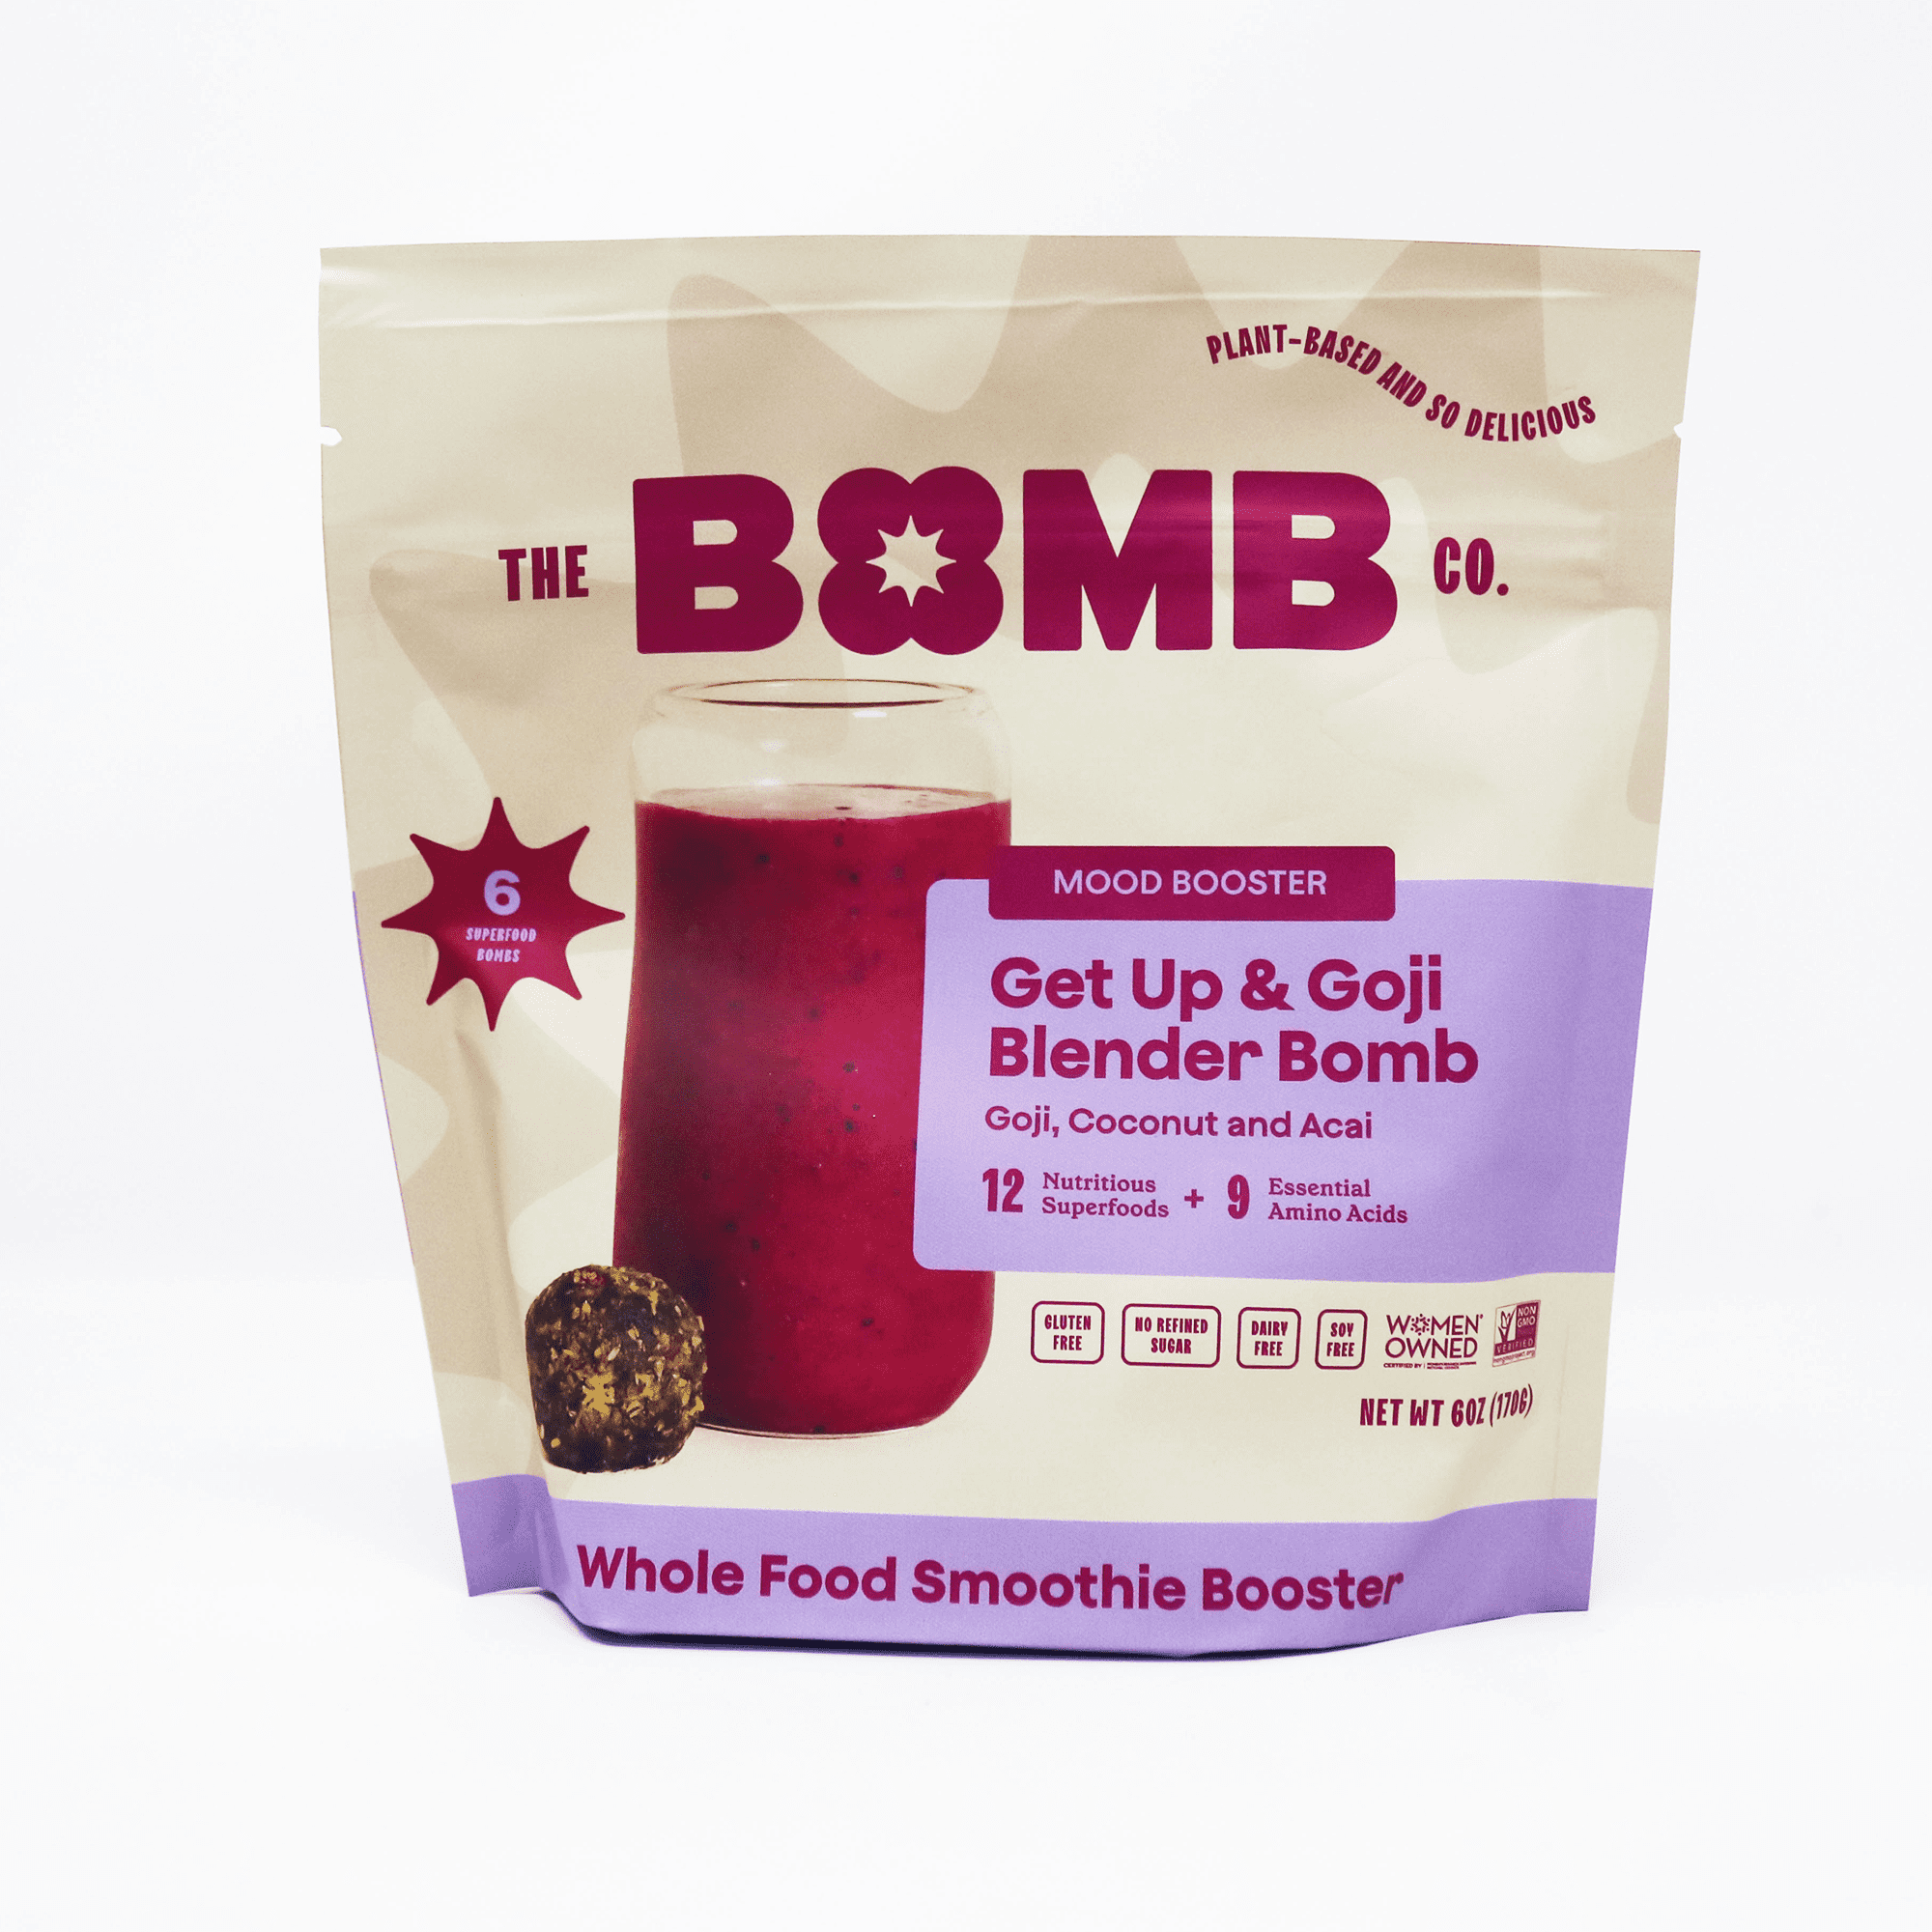 Blender Bombs Bomb Bar: Peanut Butter & Jelly Case (9 BARS